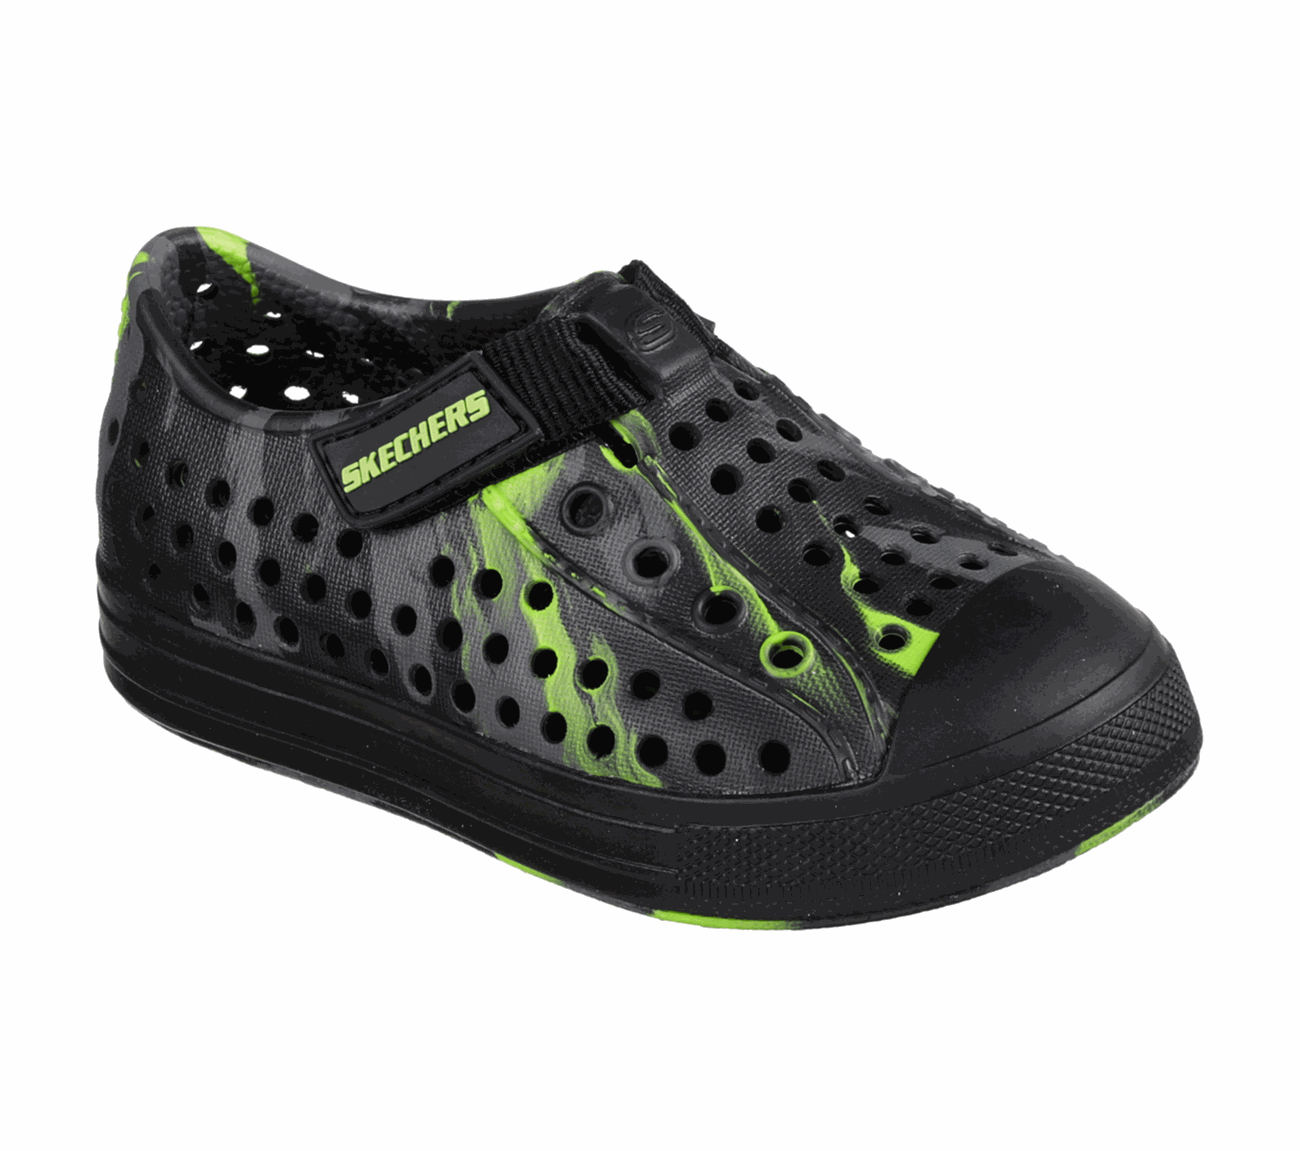 SKECHERS Guzman 2.0 - Swirlers Sport Shoes